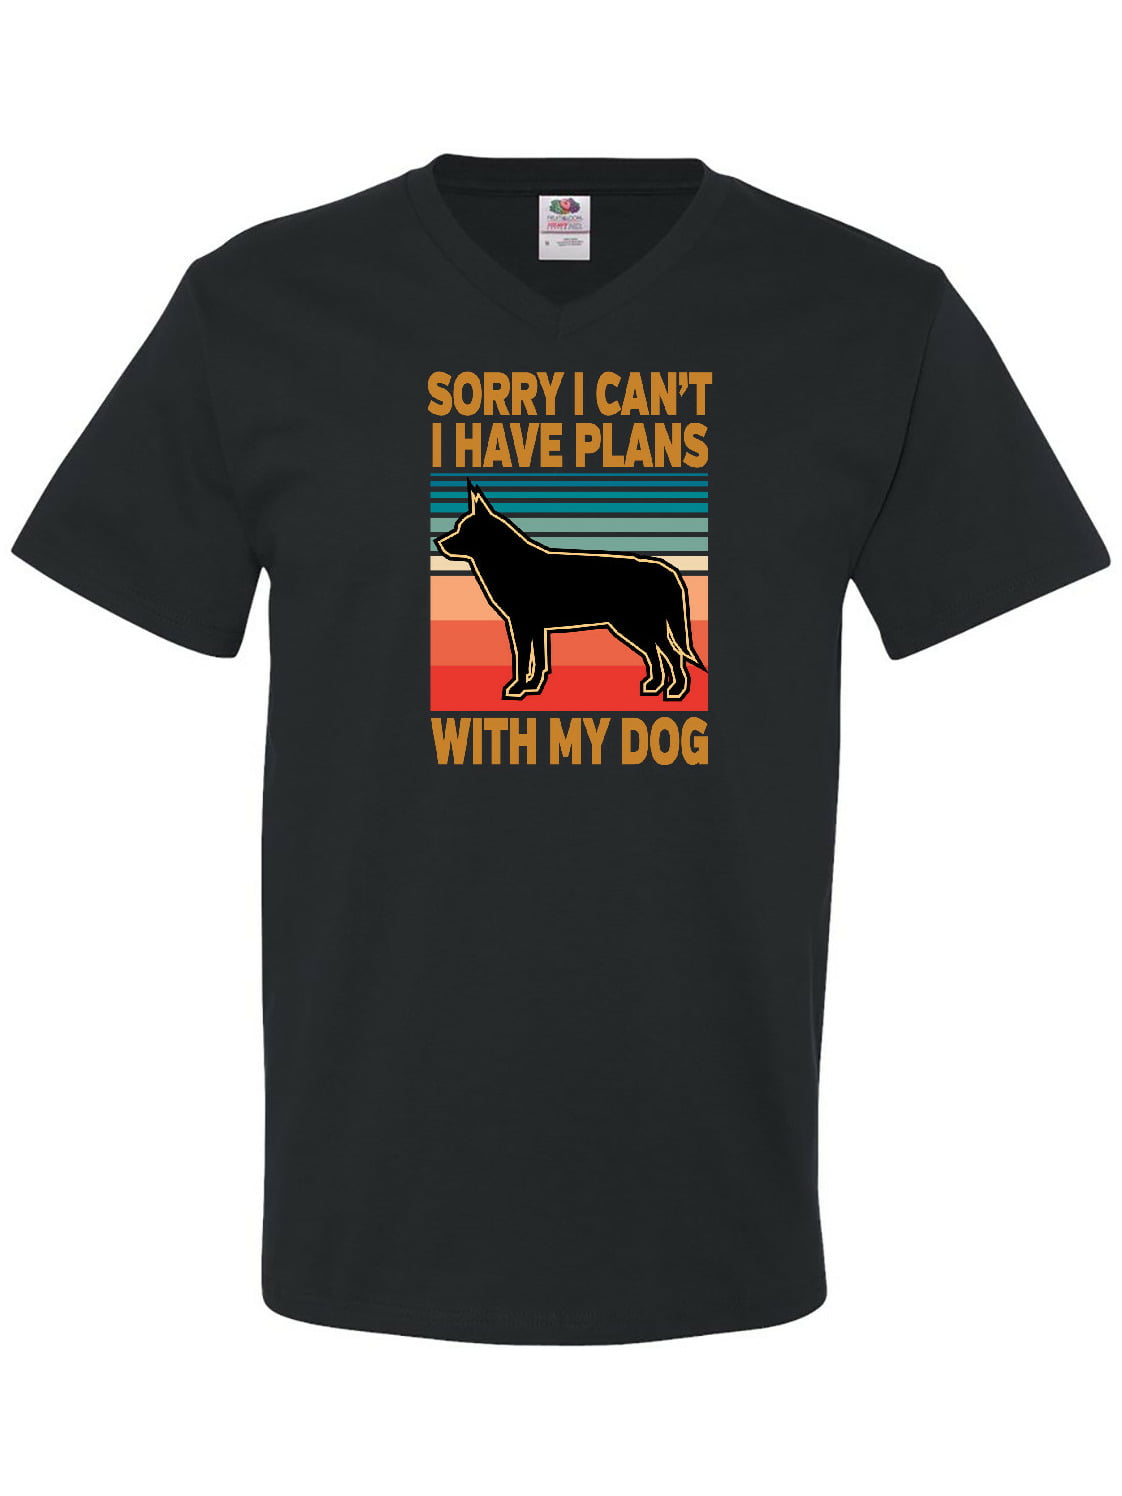 Cool Siberian Husky Glassed T Shirt Gift for Men Women Funny Tee for Dog Lover